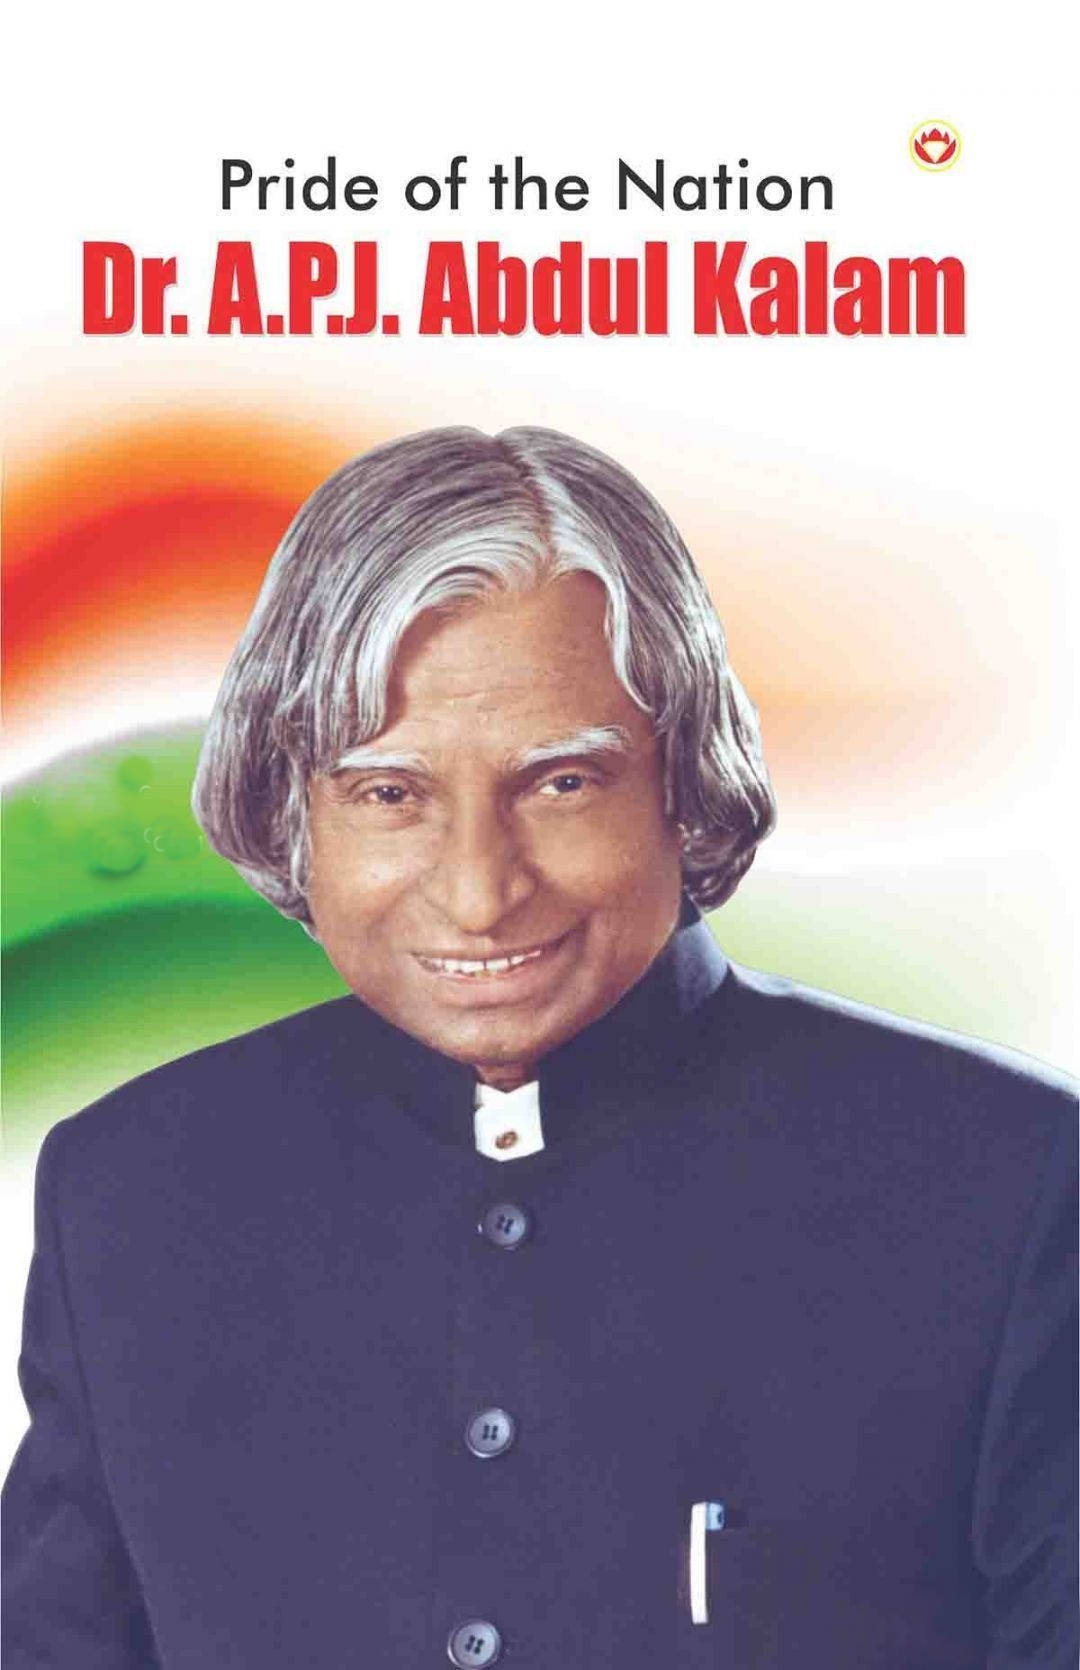 Abdul Kalam Hd Pride Of The Nation Wallpaper